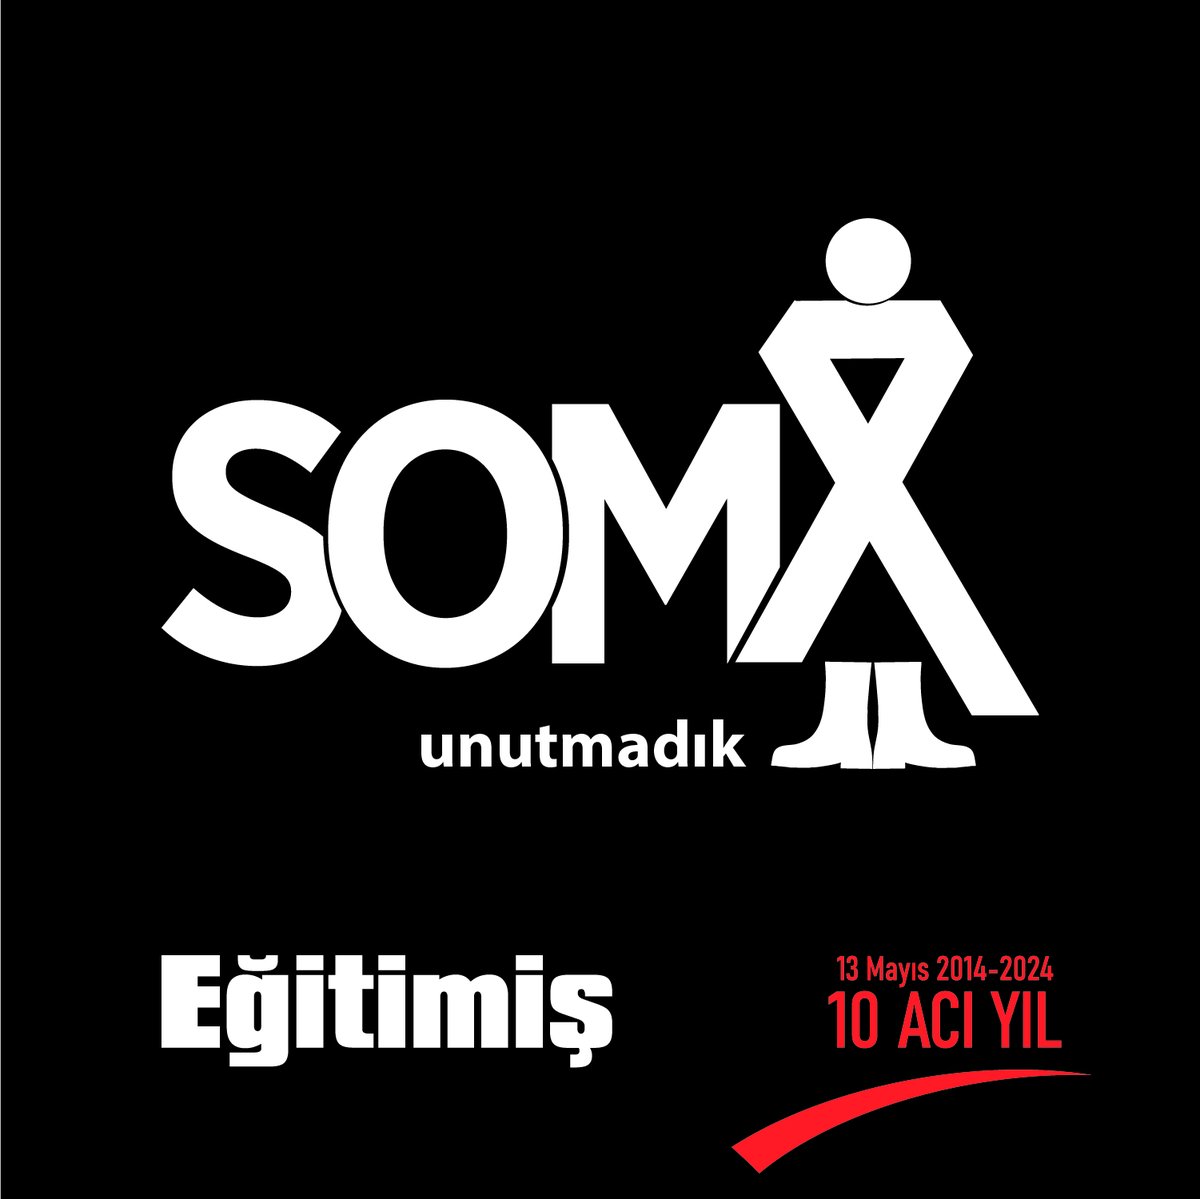 Soma’da 301 madencinin katledildiği facianın üzerinden 10 yıl geçti. AKP iktidarının “kaza” diyerek normalleştirmeye çalıştığı ancak Türkiye tarihinin ve dünyanın en ölümcül maden kazası olan Soma faciasını unutmadık, unutmayacağız. #soma